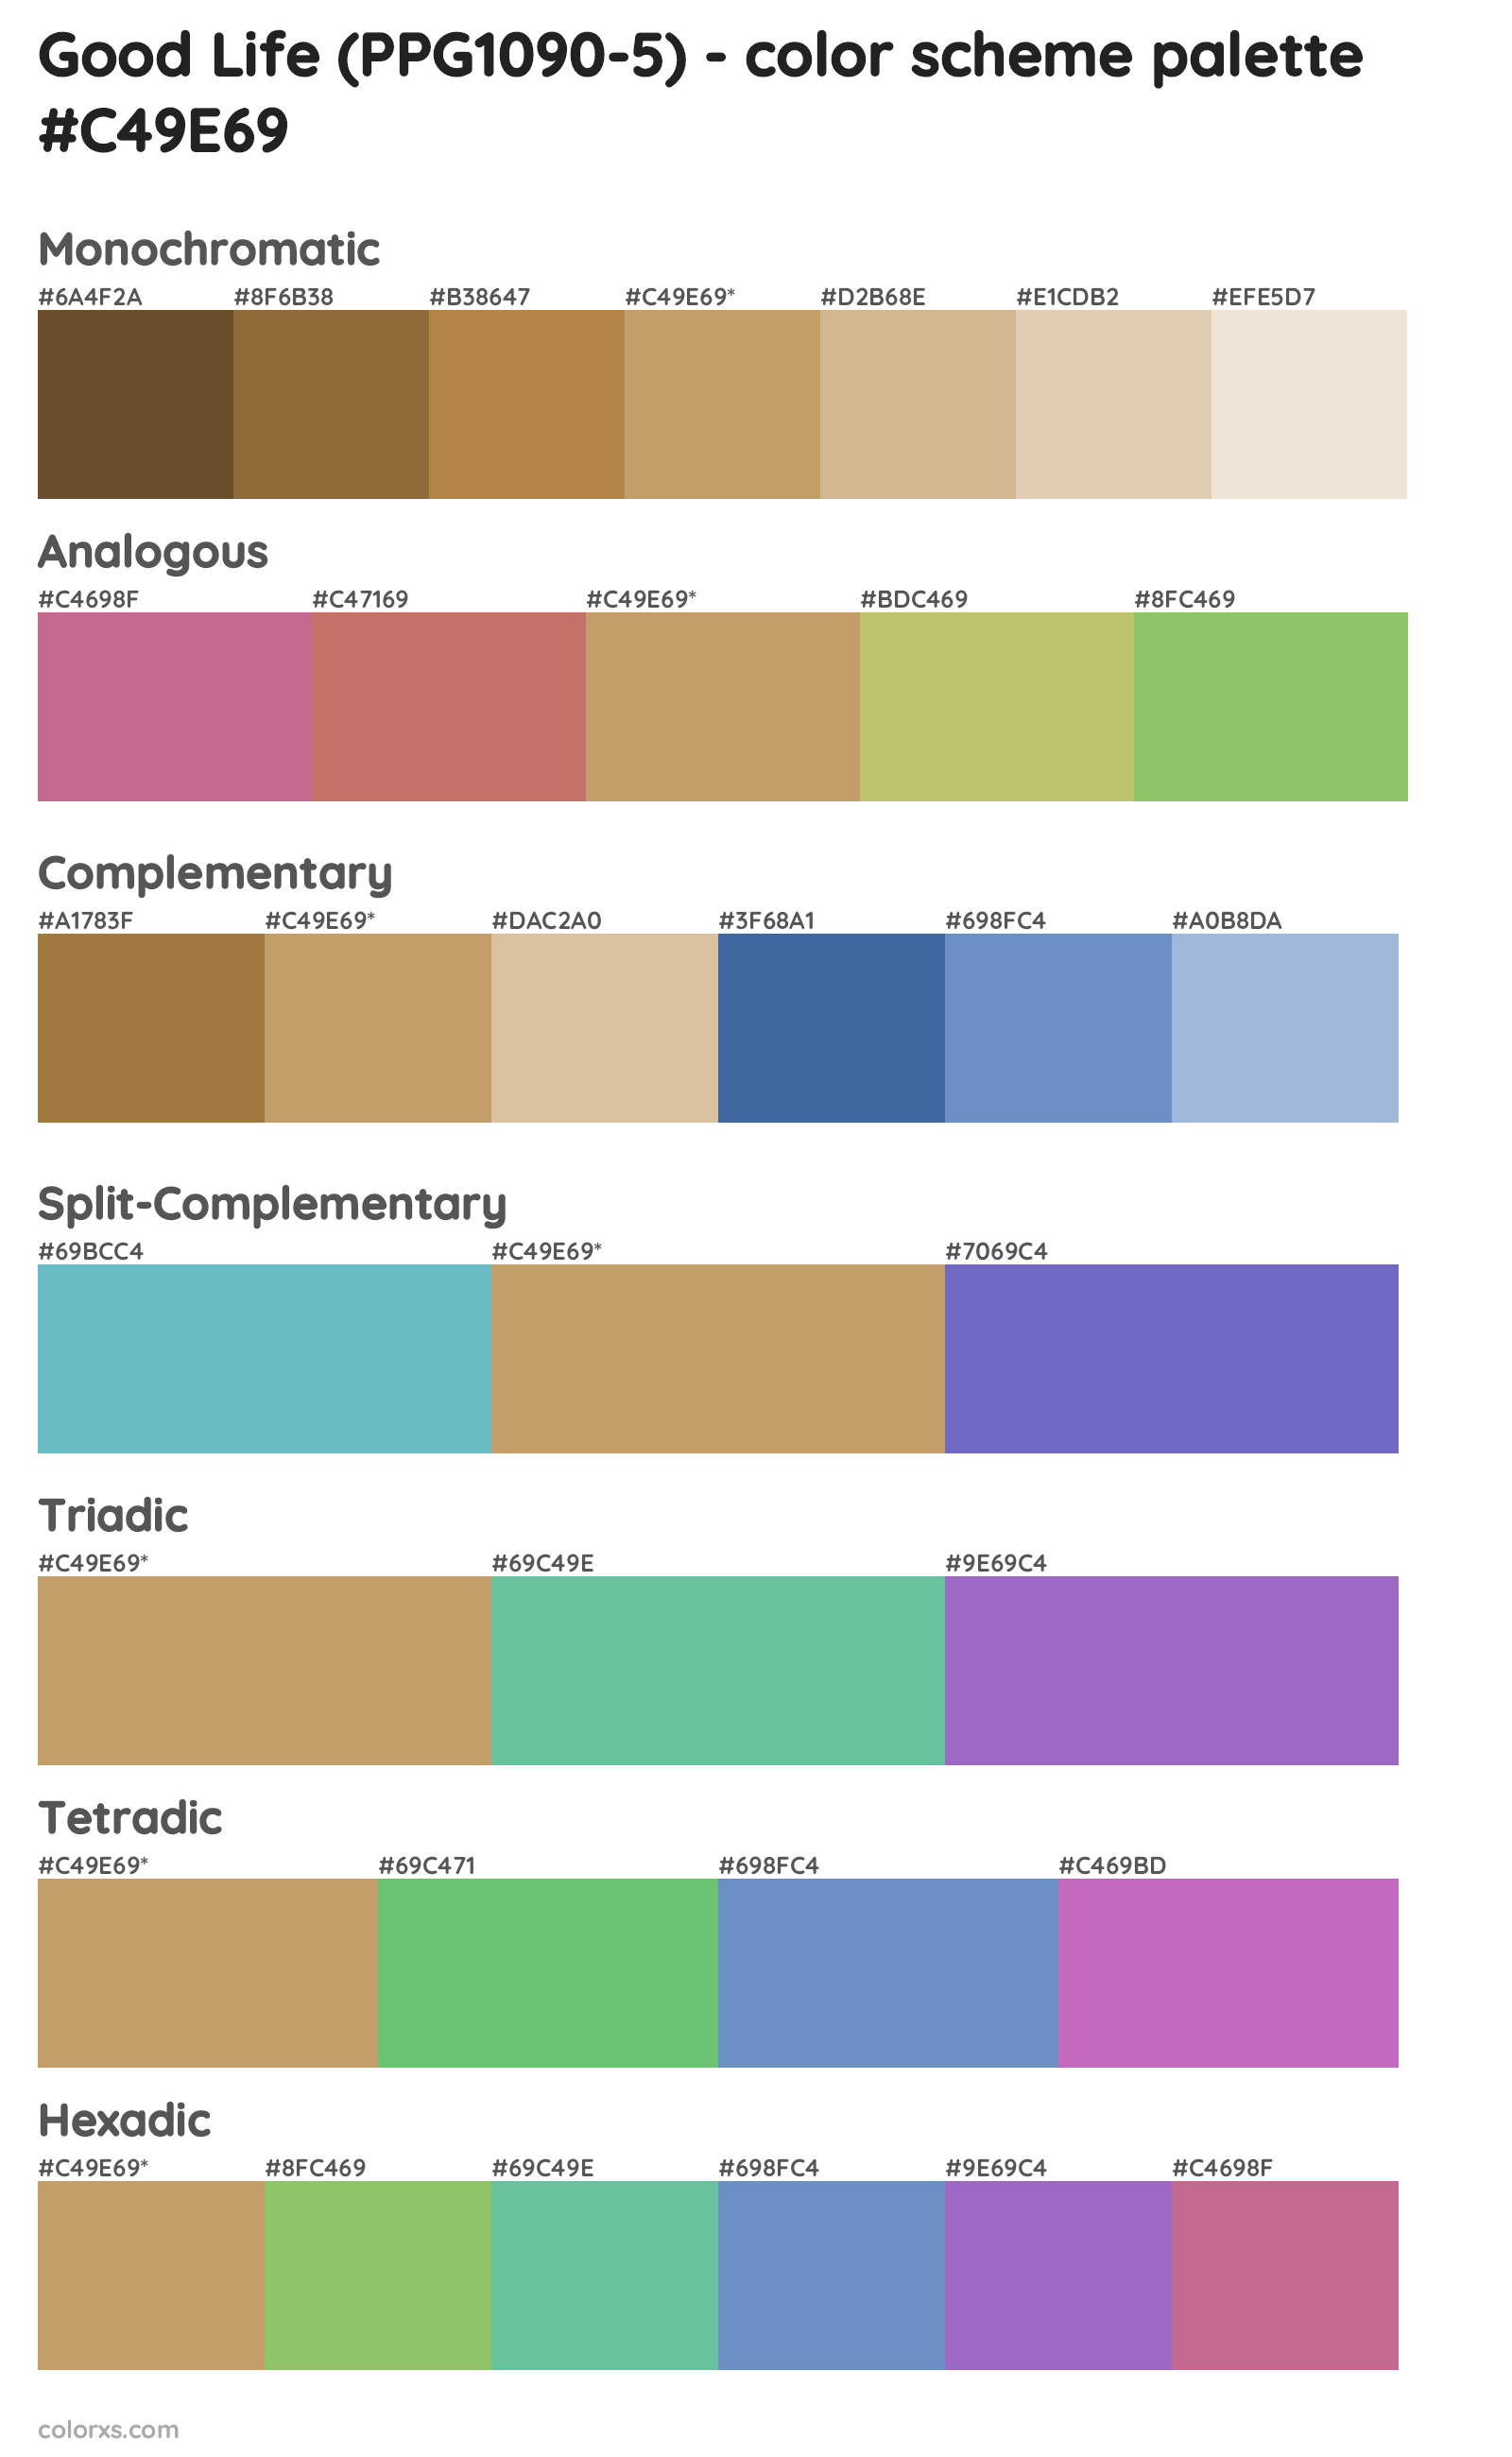 Good Life (PPG1090-5) Color Scheme Palettes